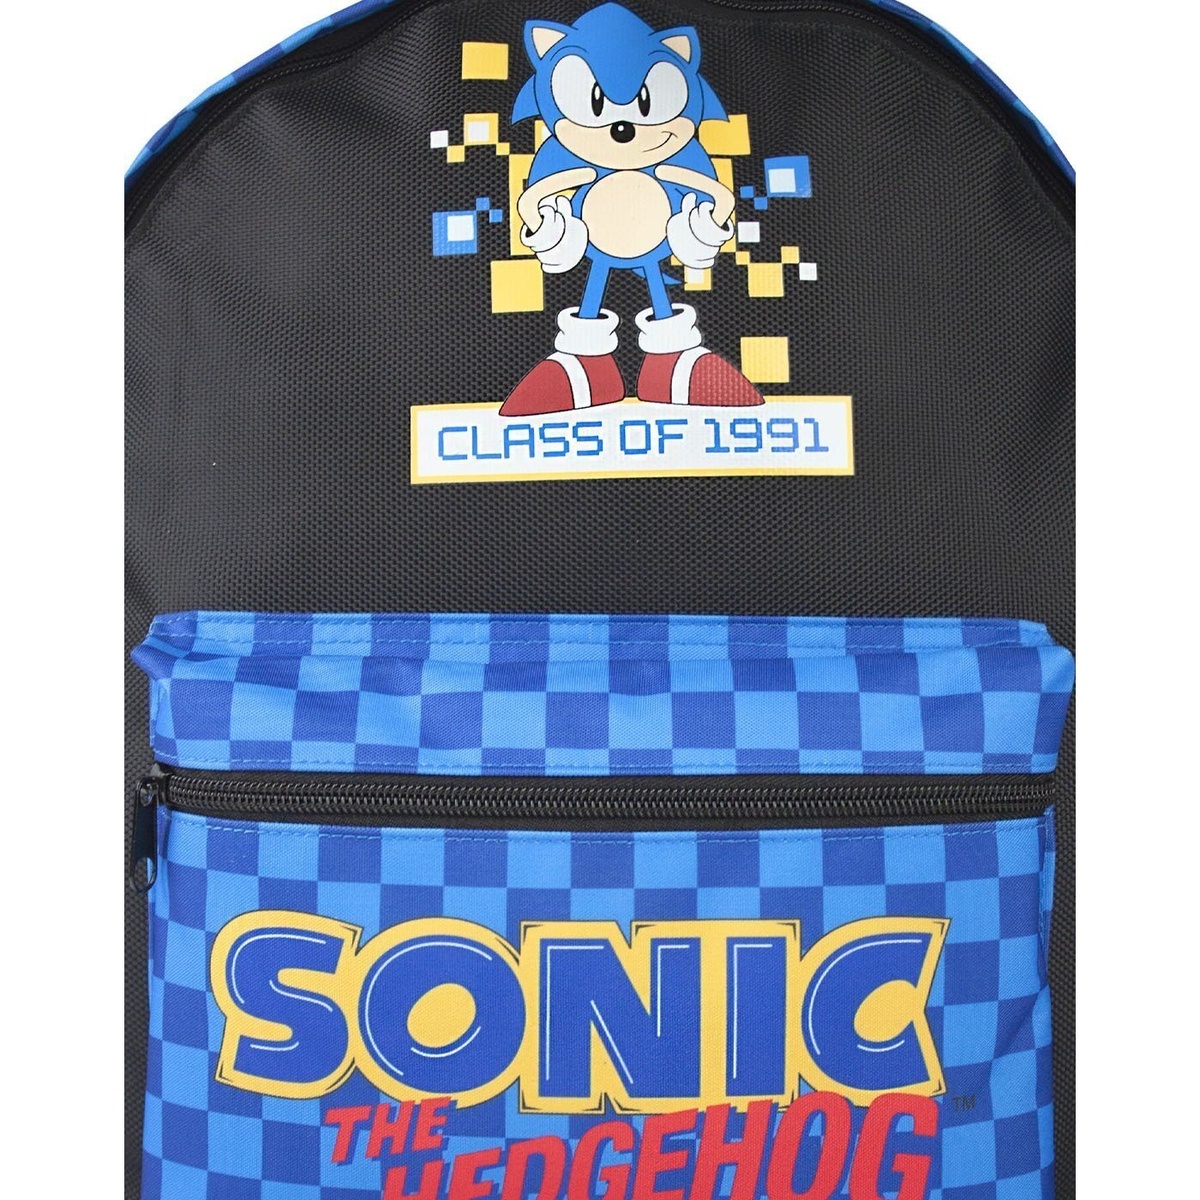 (ソニック・ザ・ヘッジホッグ) Sonic The Hedgehog オフィシャル商品 キッズ・子供 レトロゲーム バックパック リュック かばん 【海外通販】